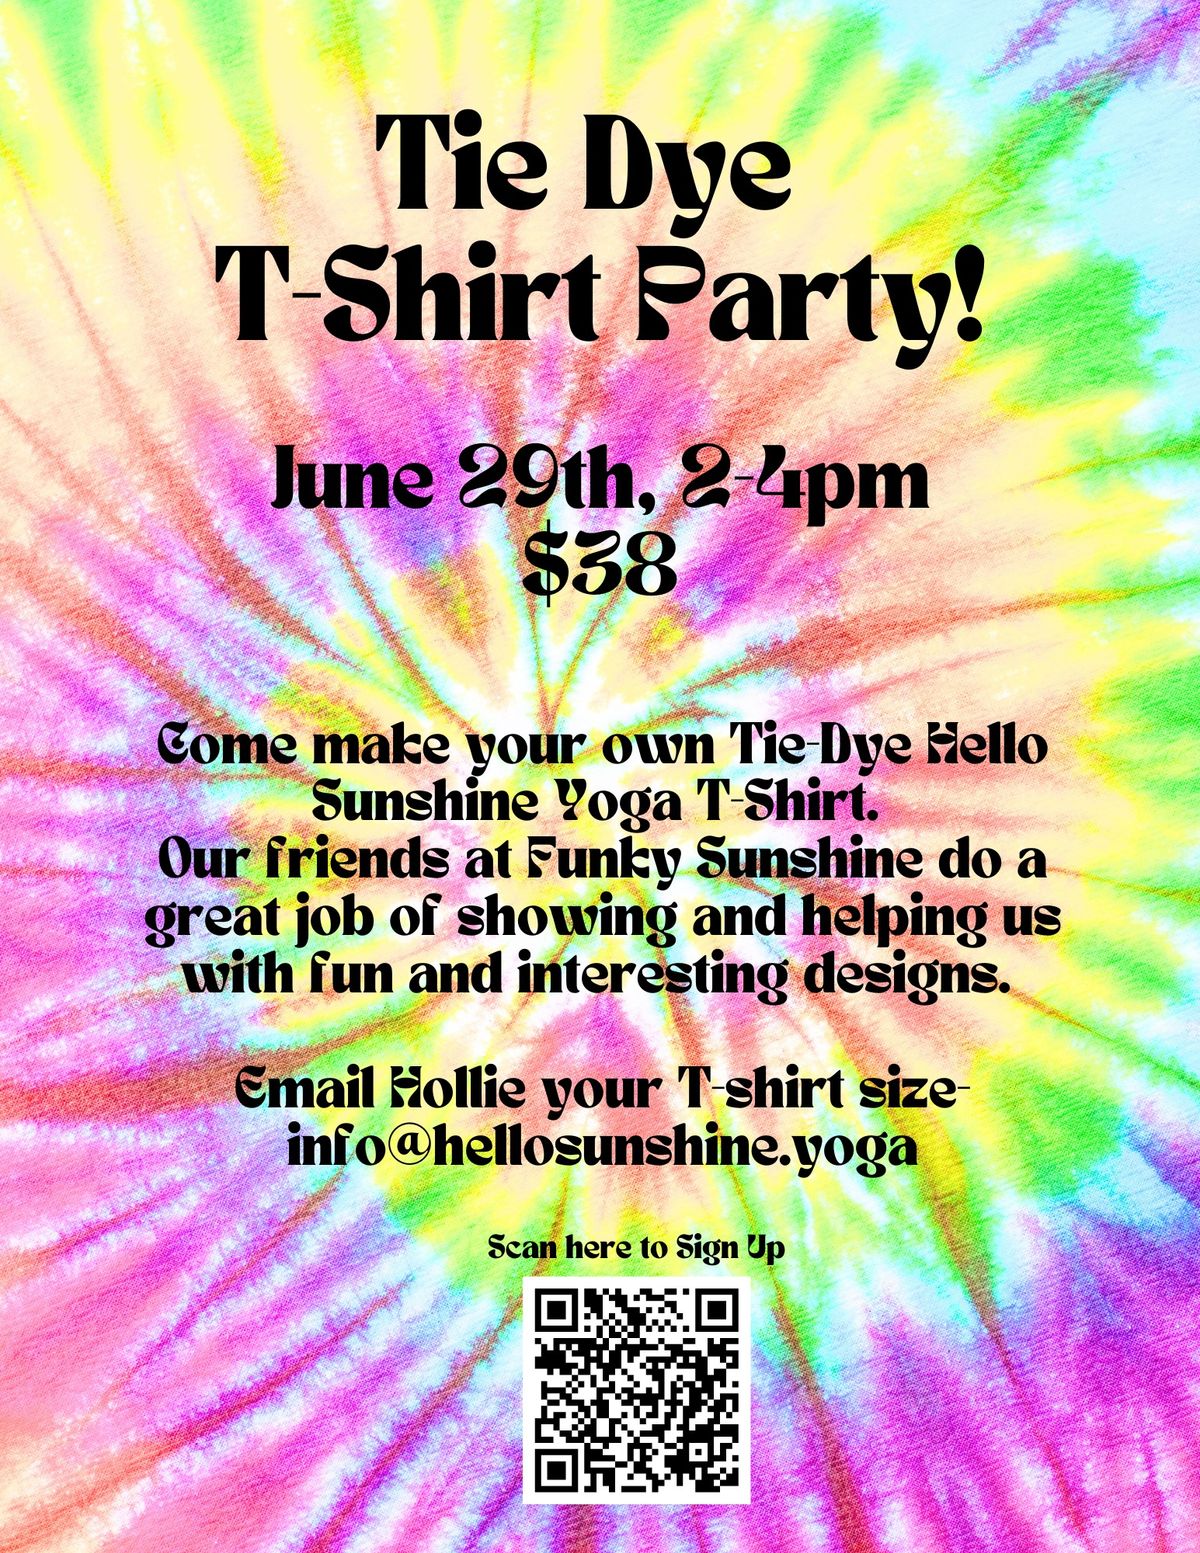 Tie Dye T-Shirt Party!